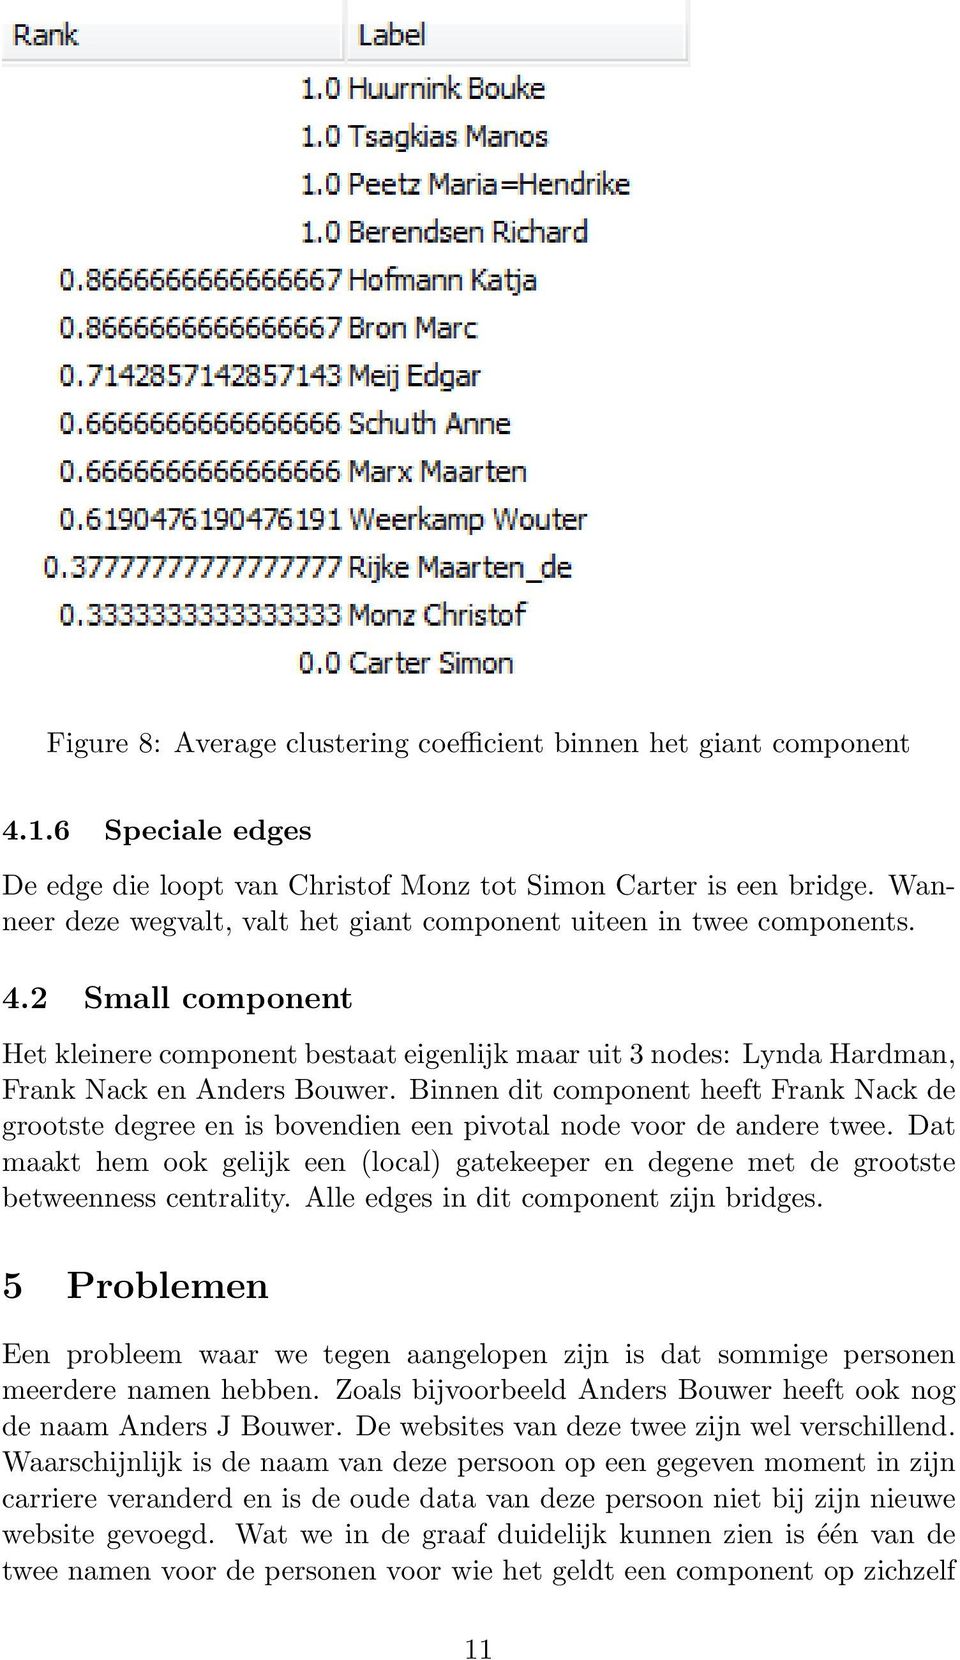 Binnen dit component heeft Frank Nack de grootste degree en is bovendien een pivotal node voor de andere twee.